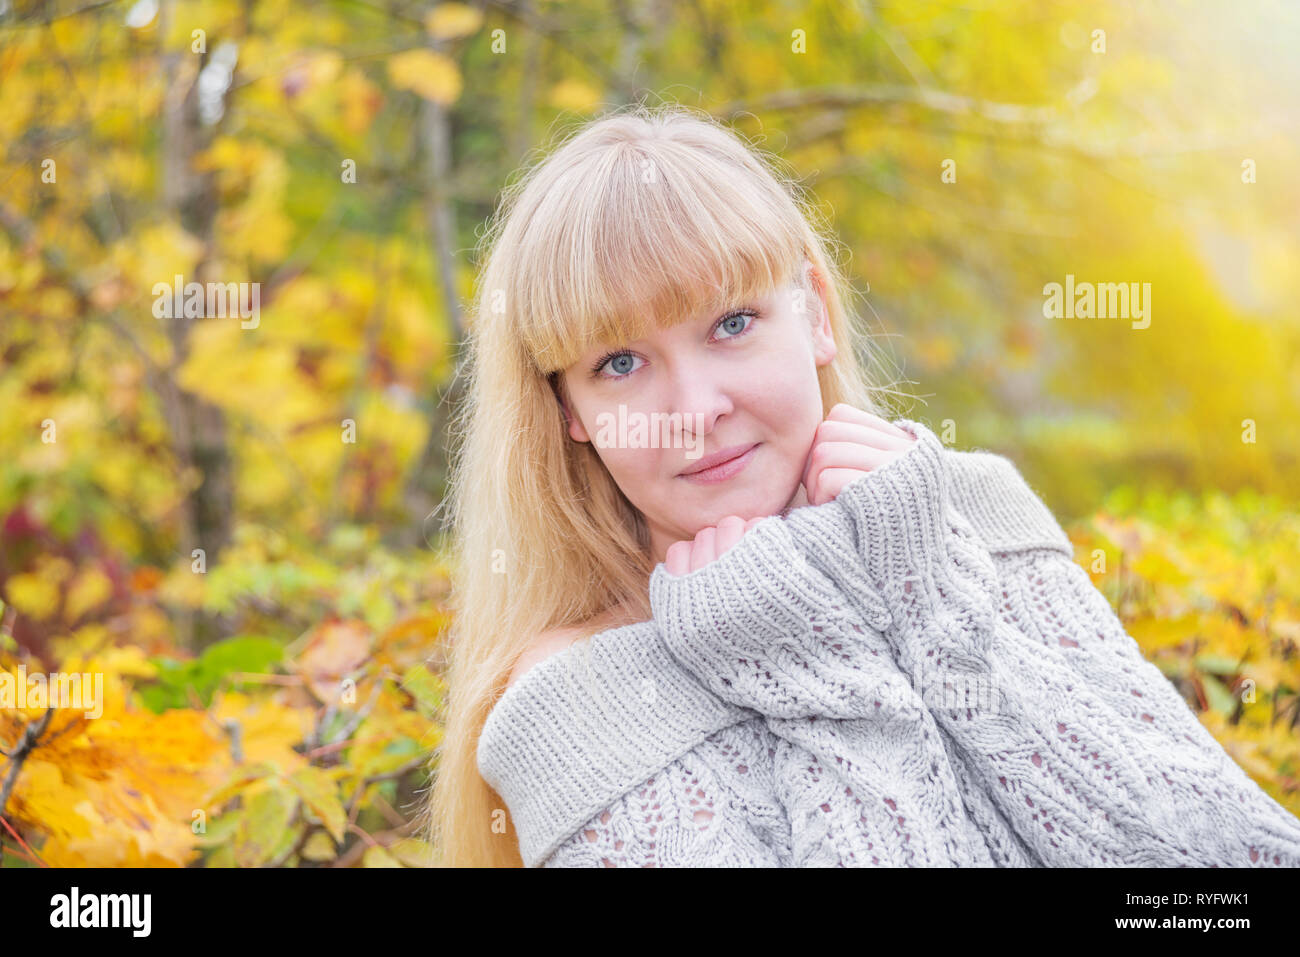 Giovane romantico blue-eyed ragazza bionda con i capelli lunghi e frangia, in un caldo grigio felpa lavorata a maglia, guarda la telecamera in autunno la natura Foto Stock